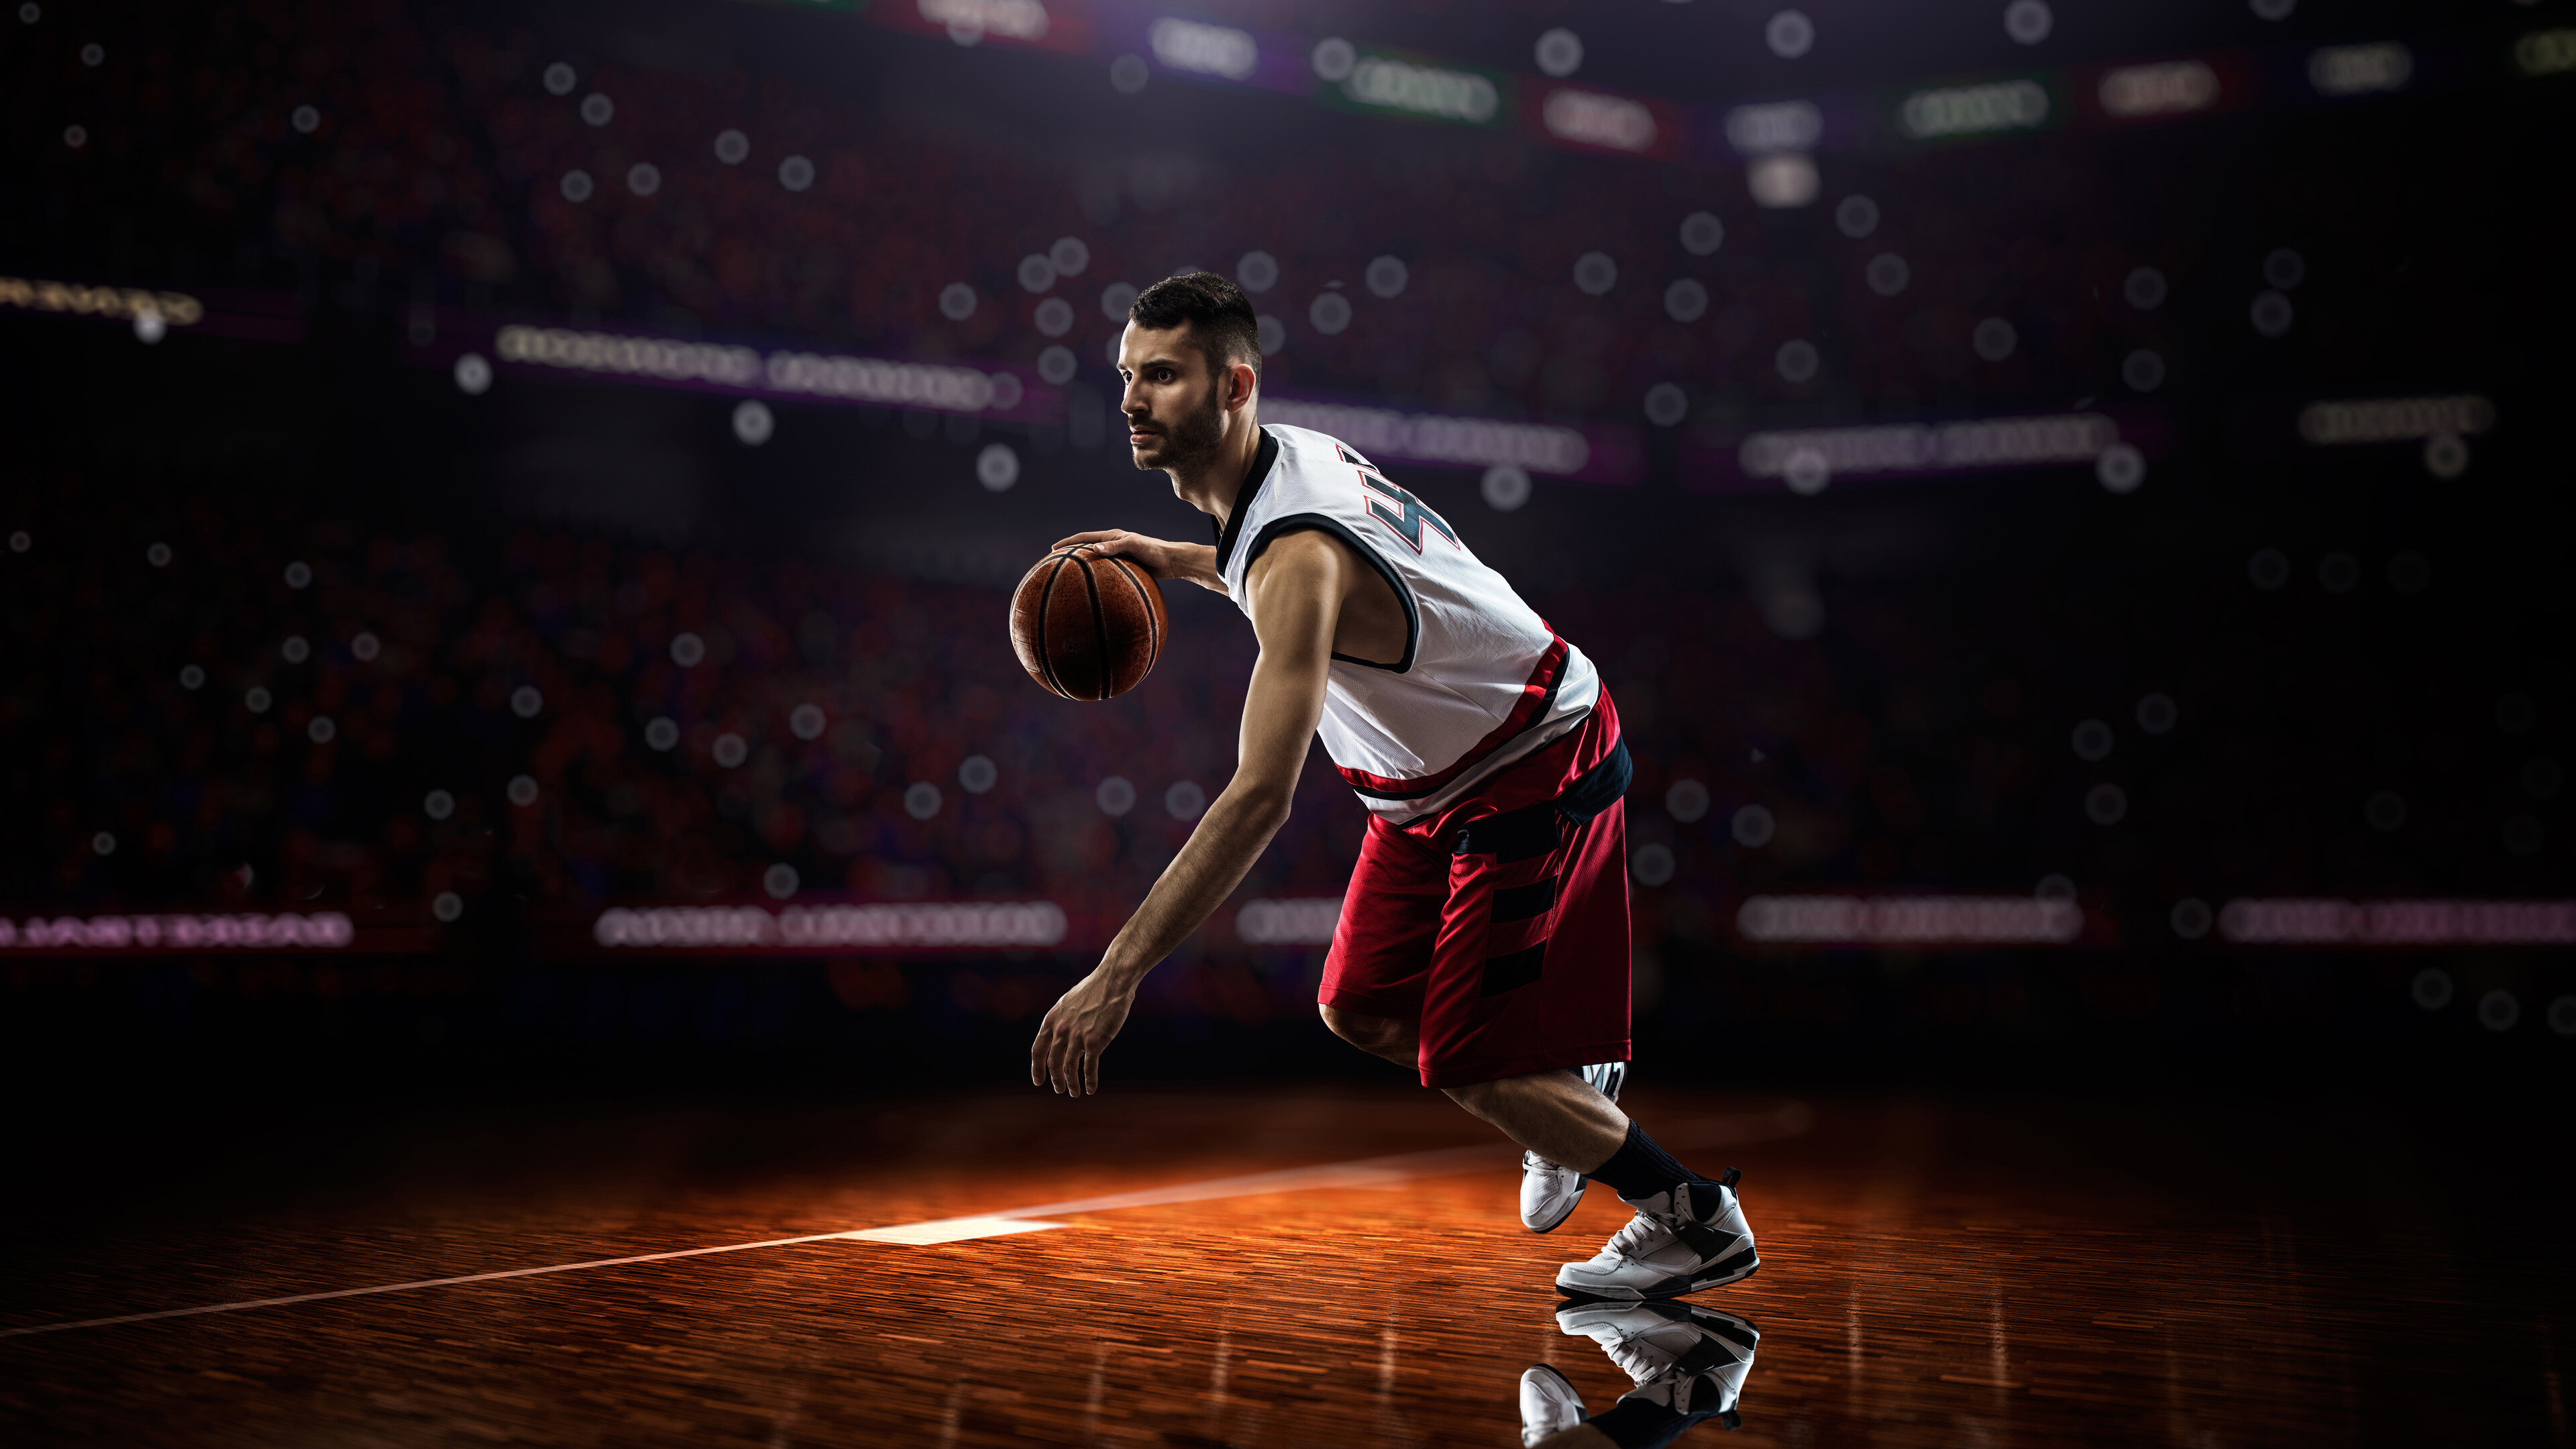 4k basketball player wallpaper, High-resolution image, Desktop, Mobile, Tablet, 3840x2160 4K Desktop